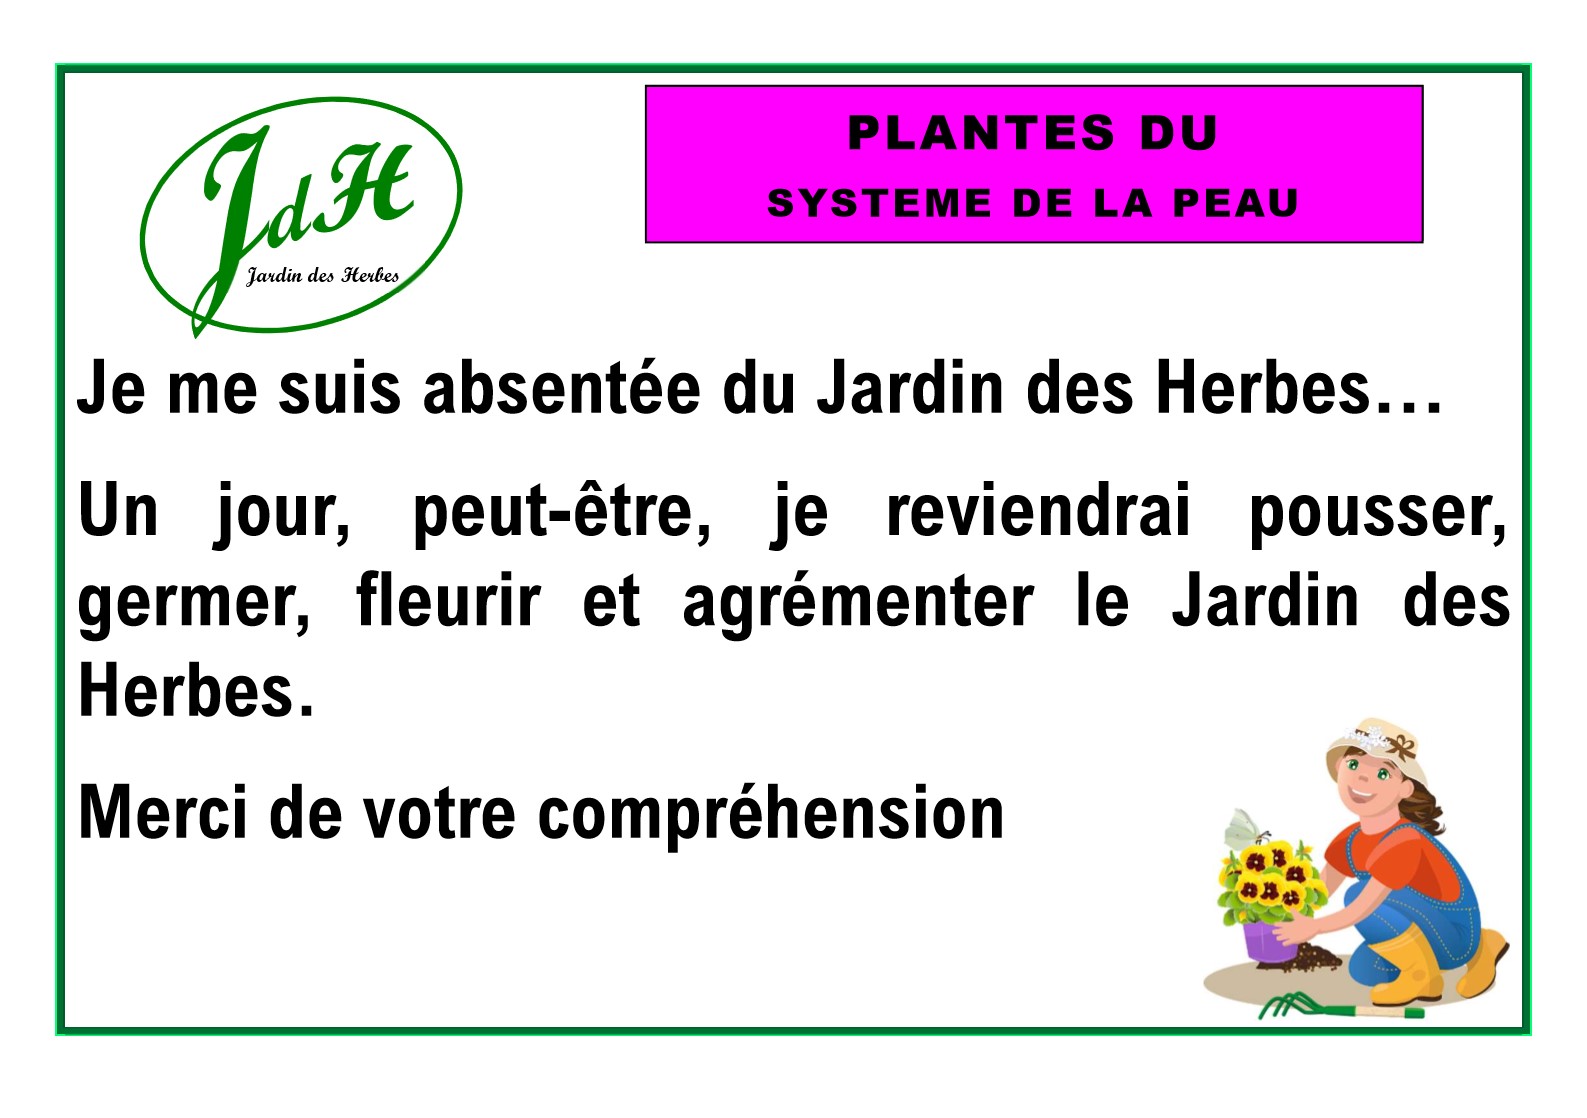 JdH - Fiches plantes PEAU absentes_1.jpg